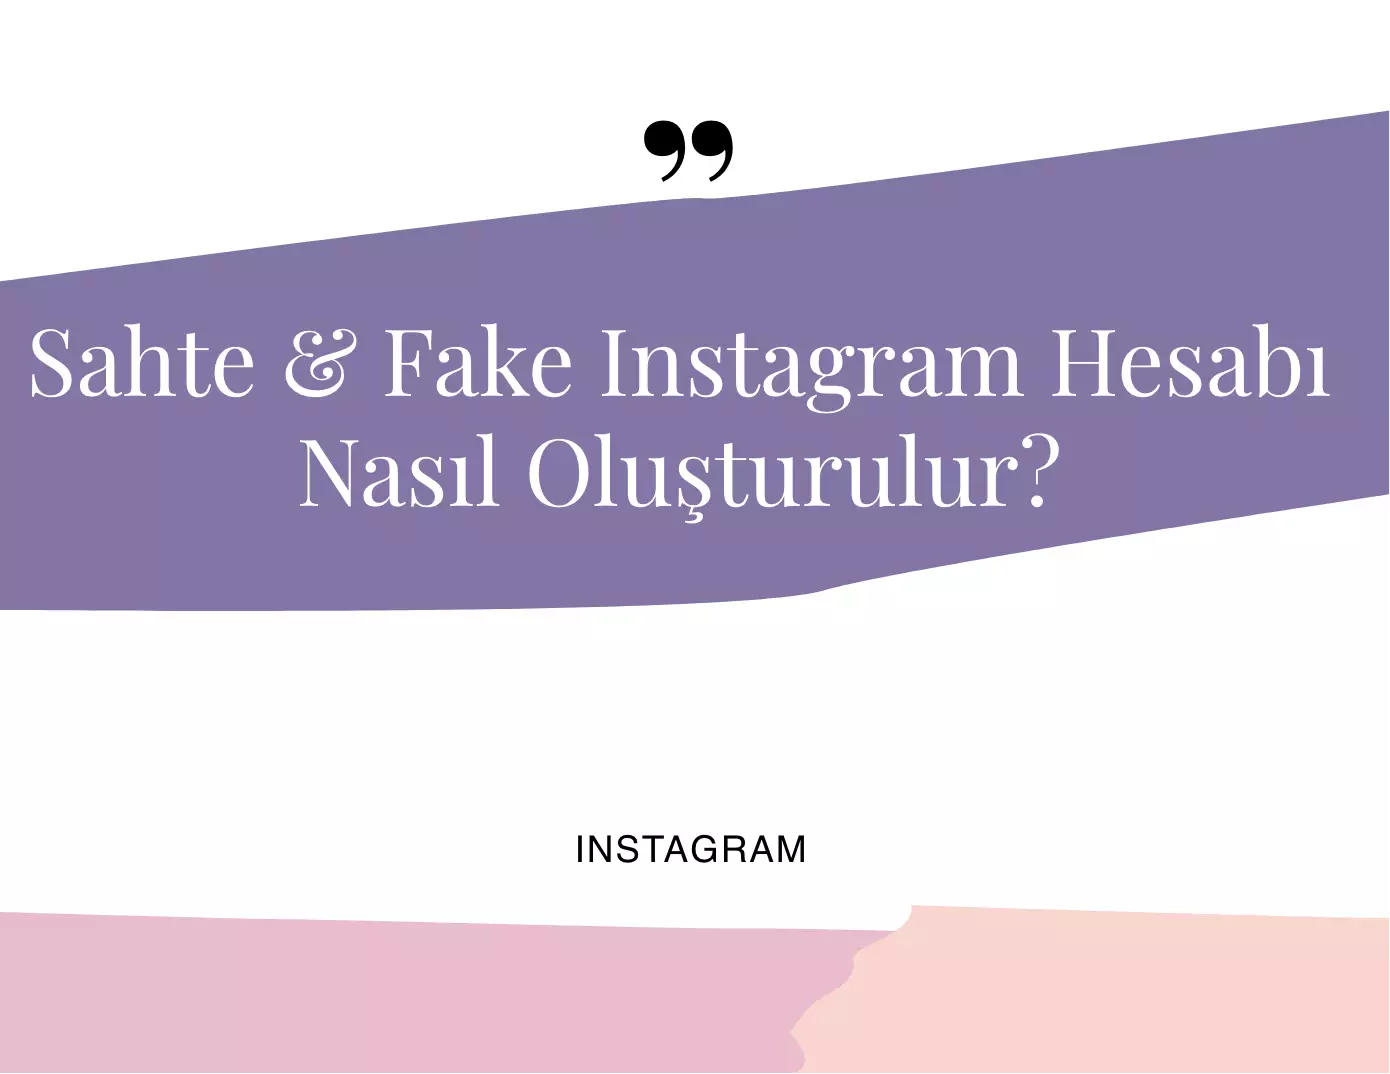 Sahte & Fake Instagram Hesabı Nasıl Oluşturulur?